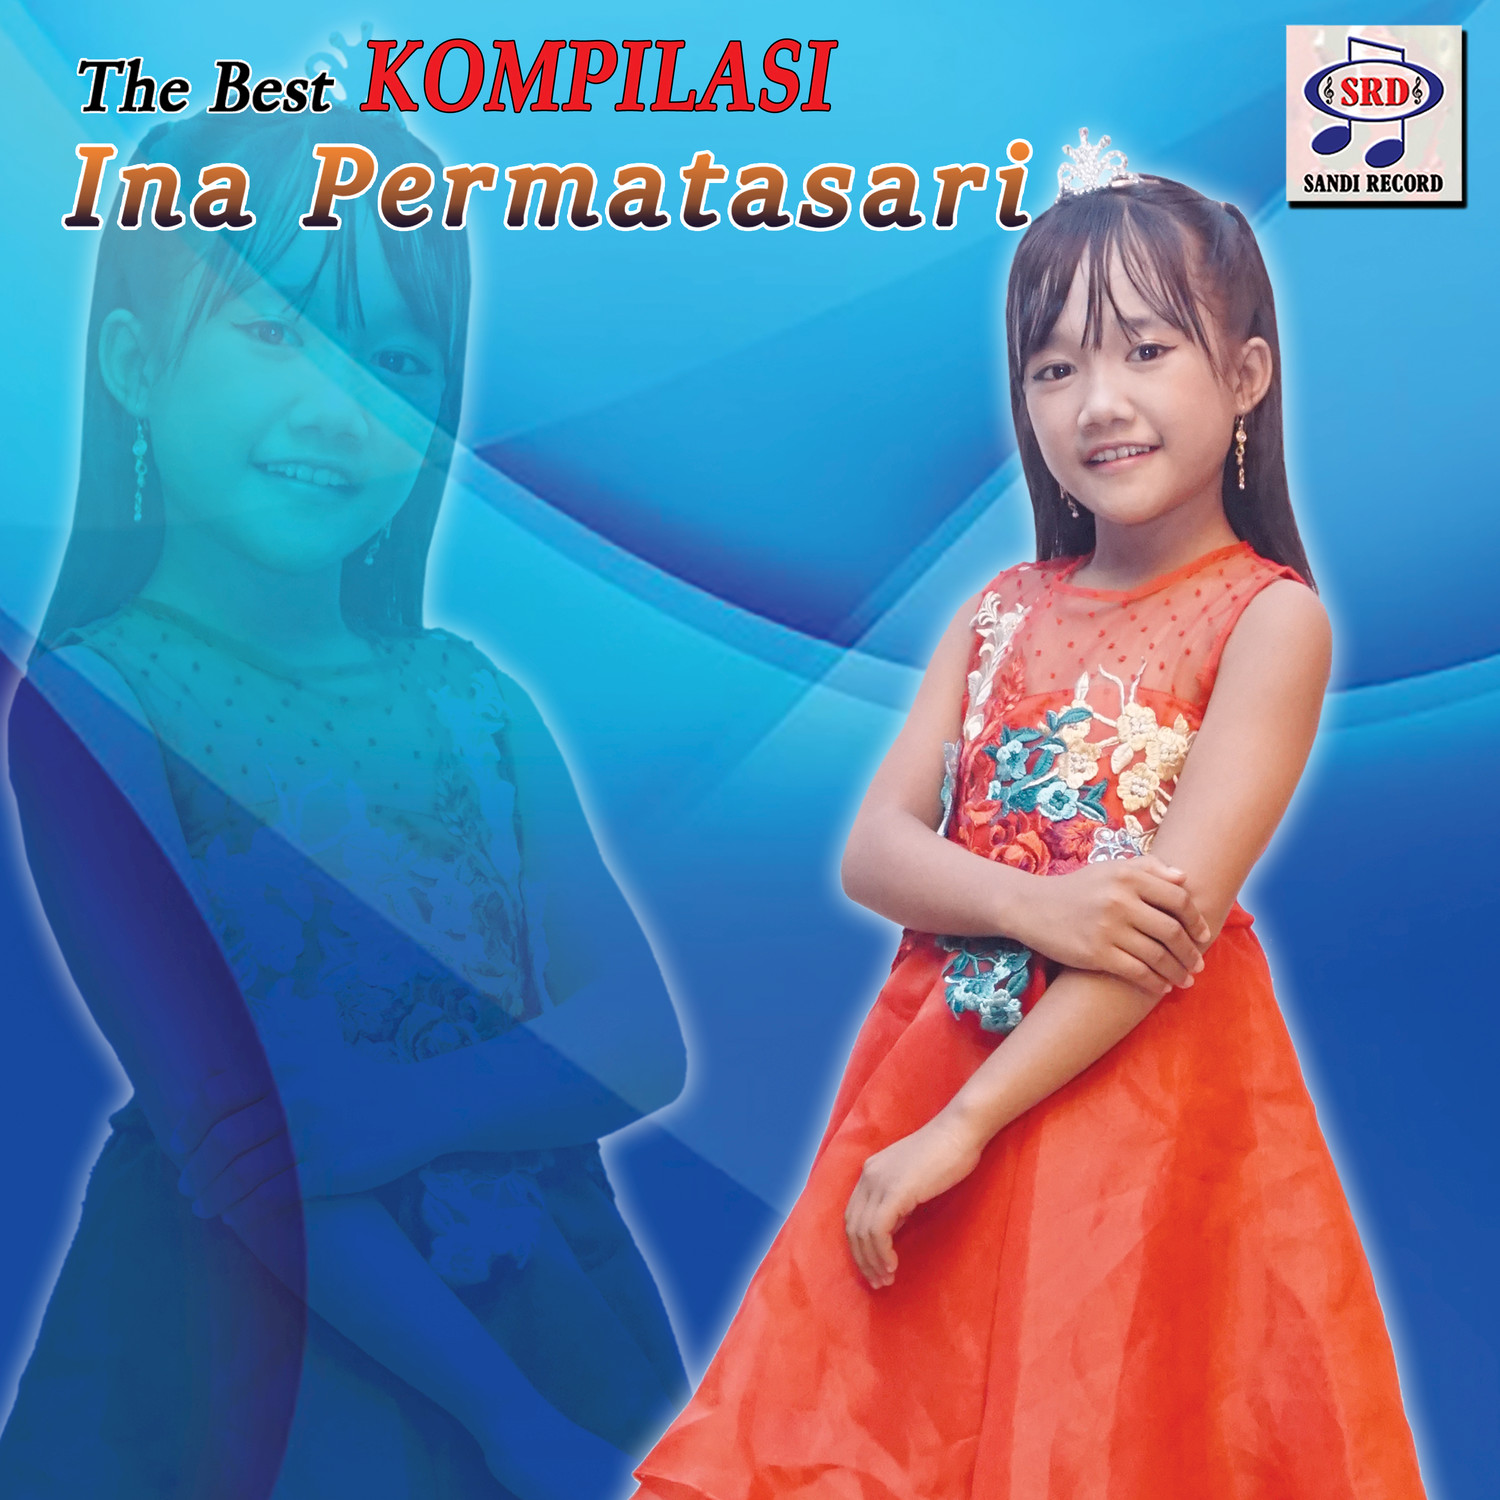 The Best Kompilasi Ina Permatasari